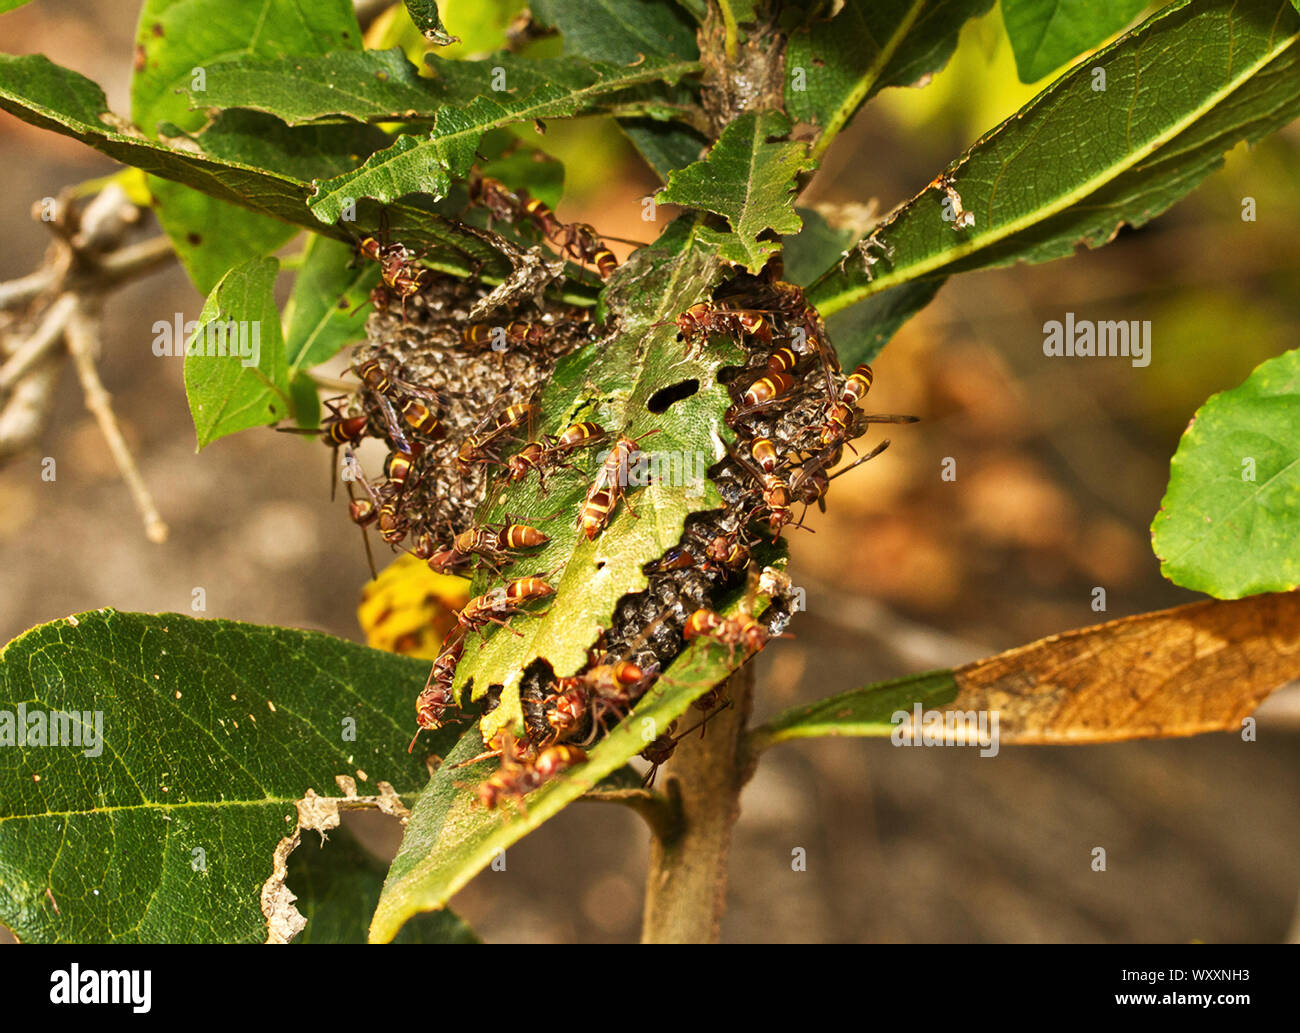 Eine Kolonie von feldwespe Wespen bewacht das Nest kooperativ die Larven von anderen mauraudeing Raubtiere zu schützen. Stockfoto